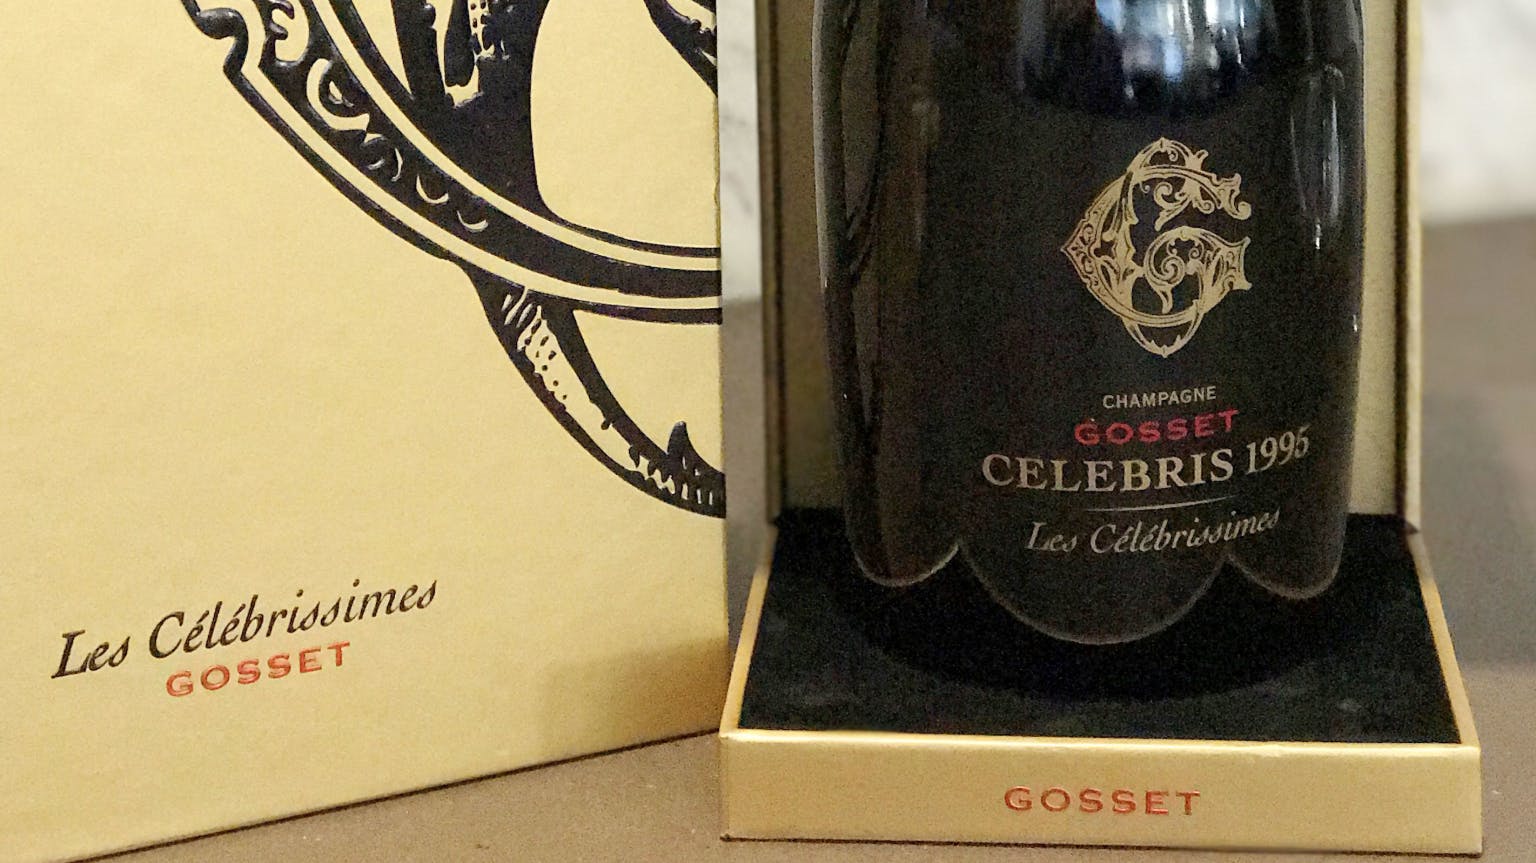 Gosset 1995 "Les Celebrissimes" - Behind the Bottle